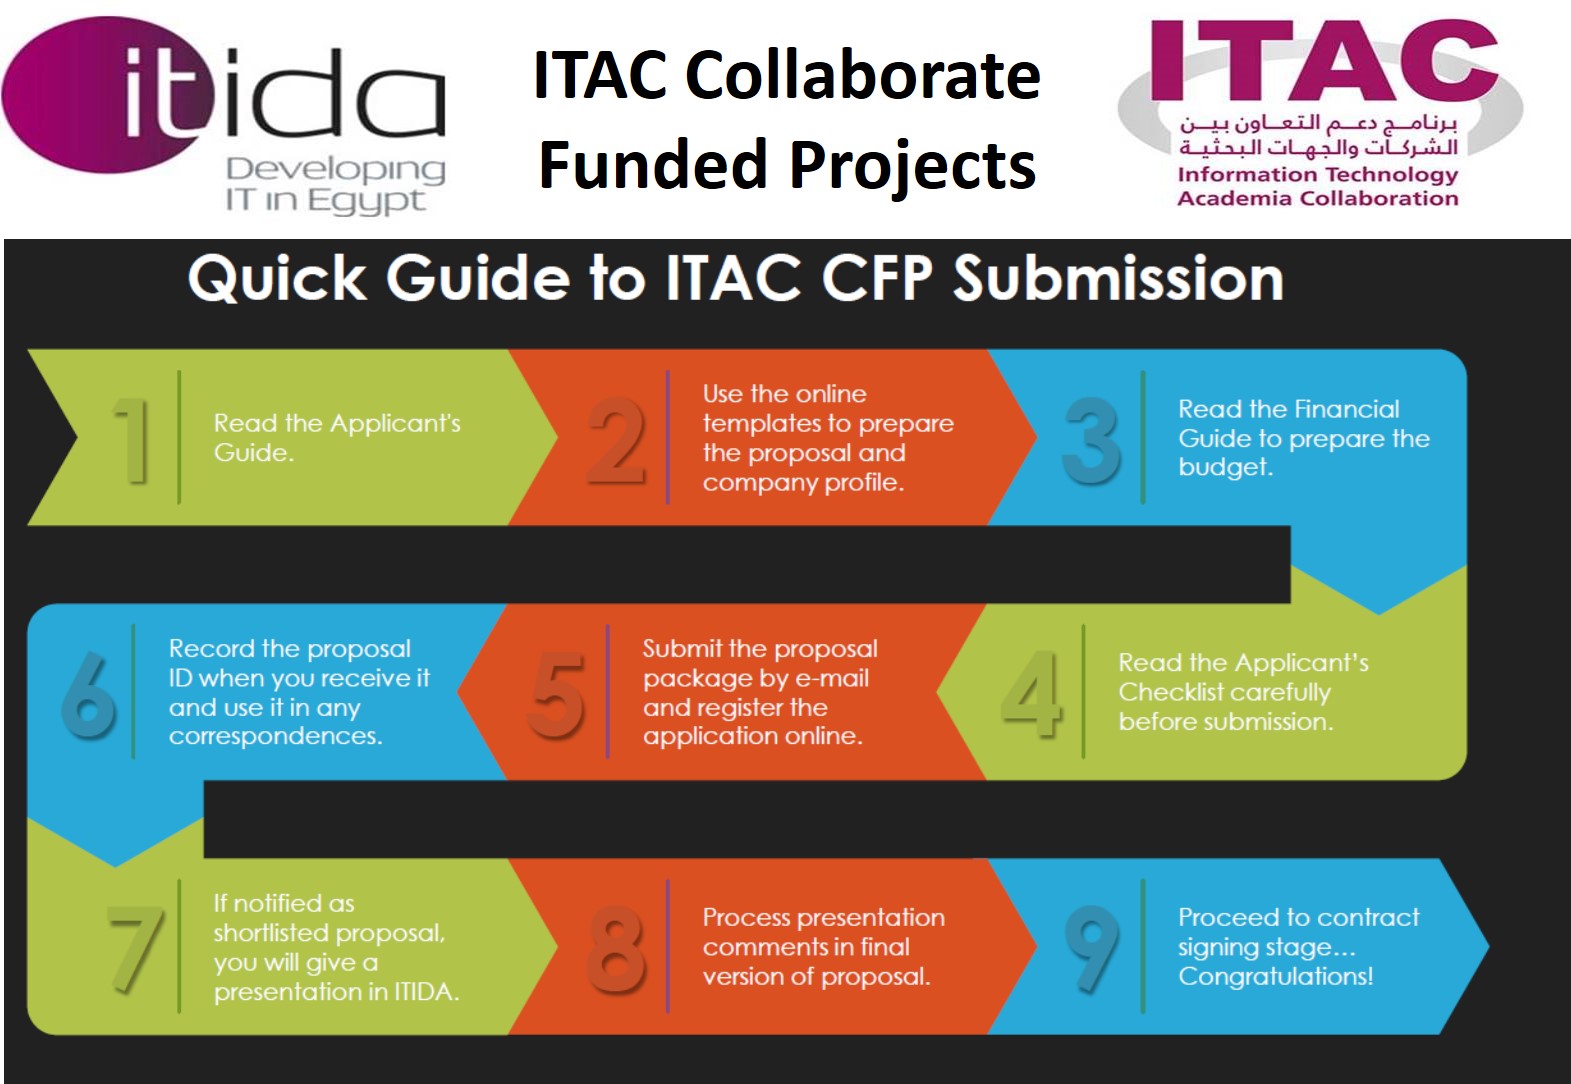 فتح برنامج دعم التعاون بين الشركات والجهات البحثية (ITAC )  باب التقديم لمشروعاته المختلفة 